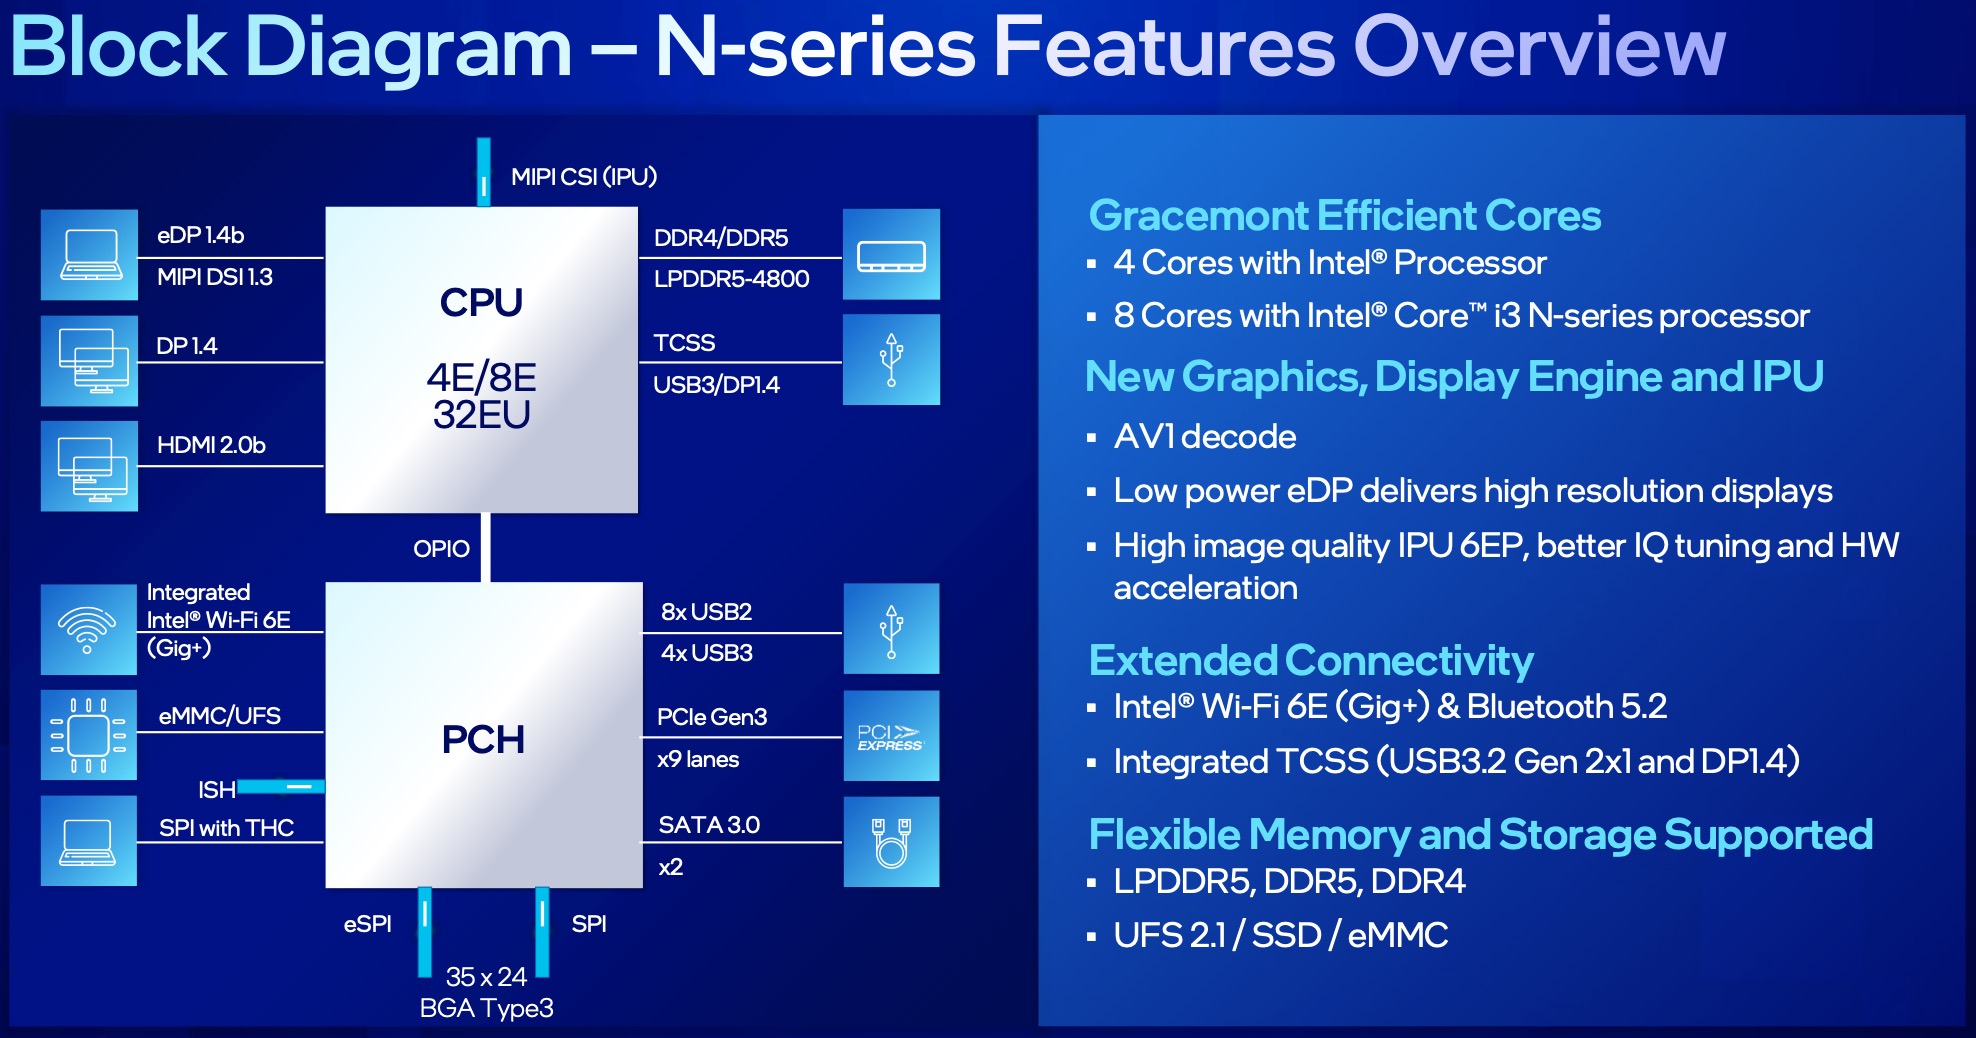 Verrast zijn Redenaar Absoluut Intel Processor N50 CPU - Benchmarks and Specs - NotebookCheck.net Tech